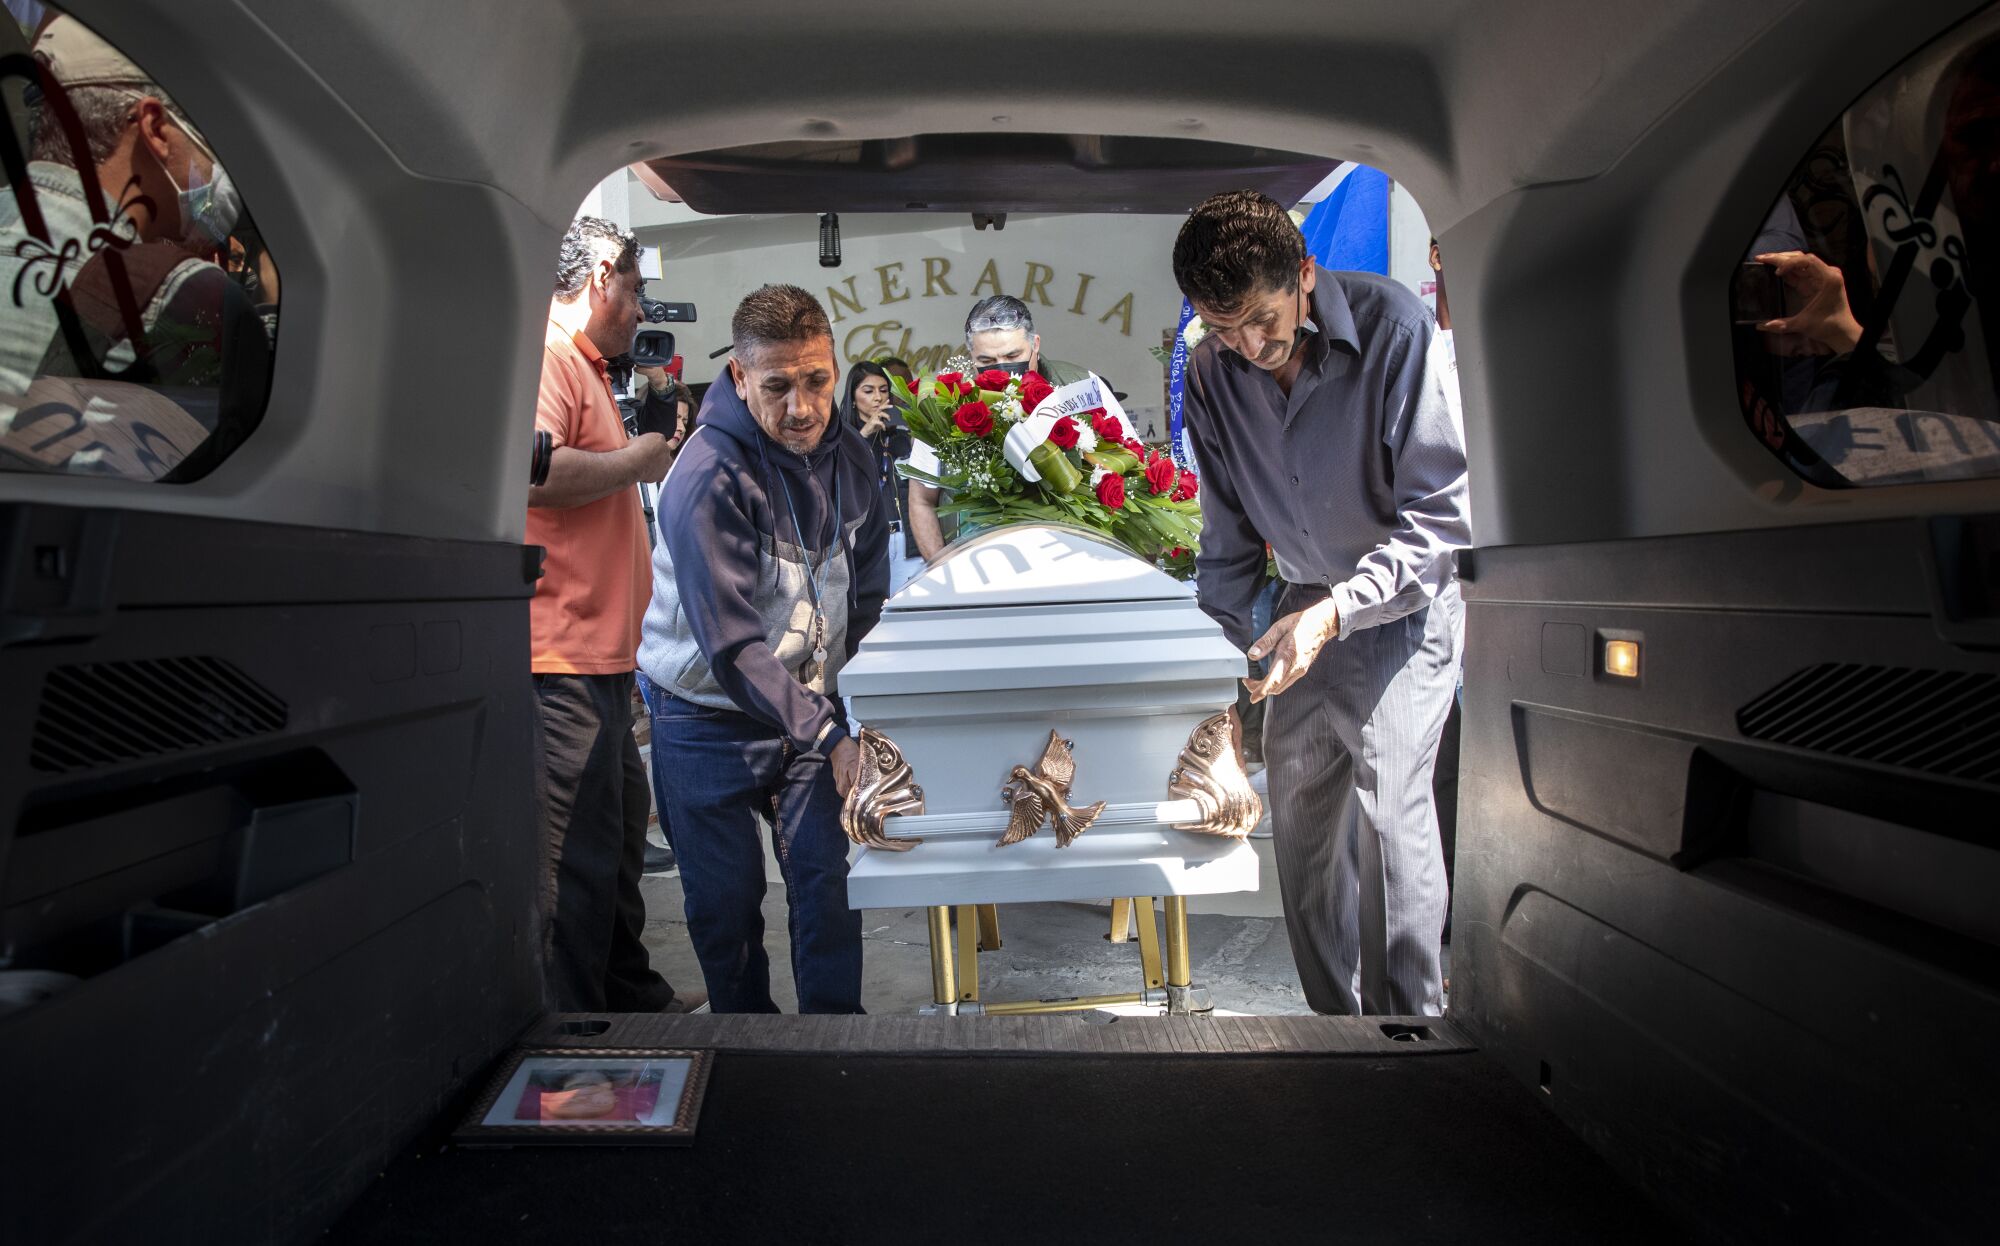 Two men place the casket of Jocelyn Anselme, 34, in a hearse on Thursday, June 2.